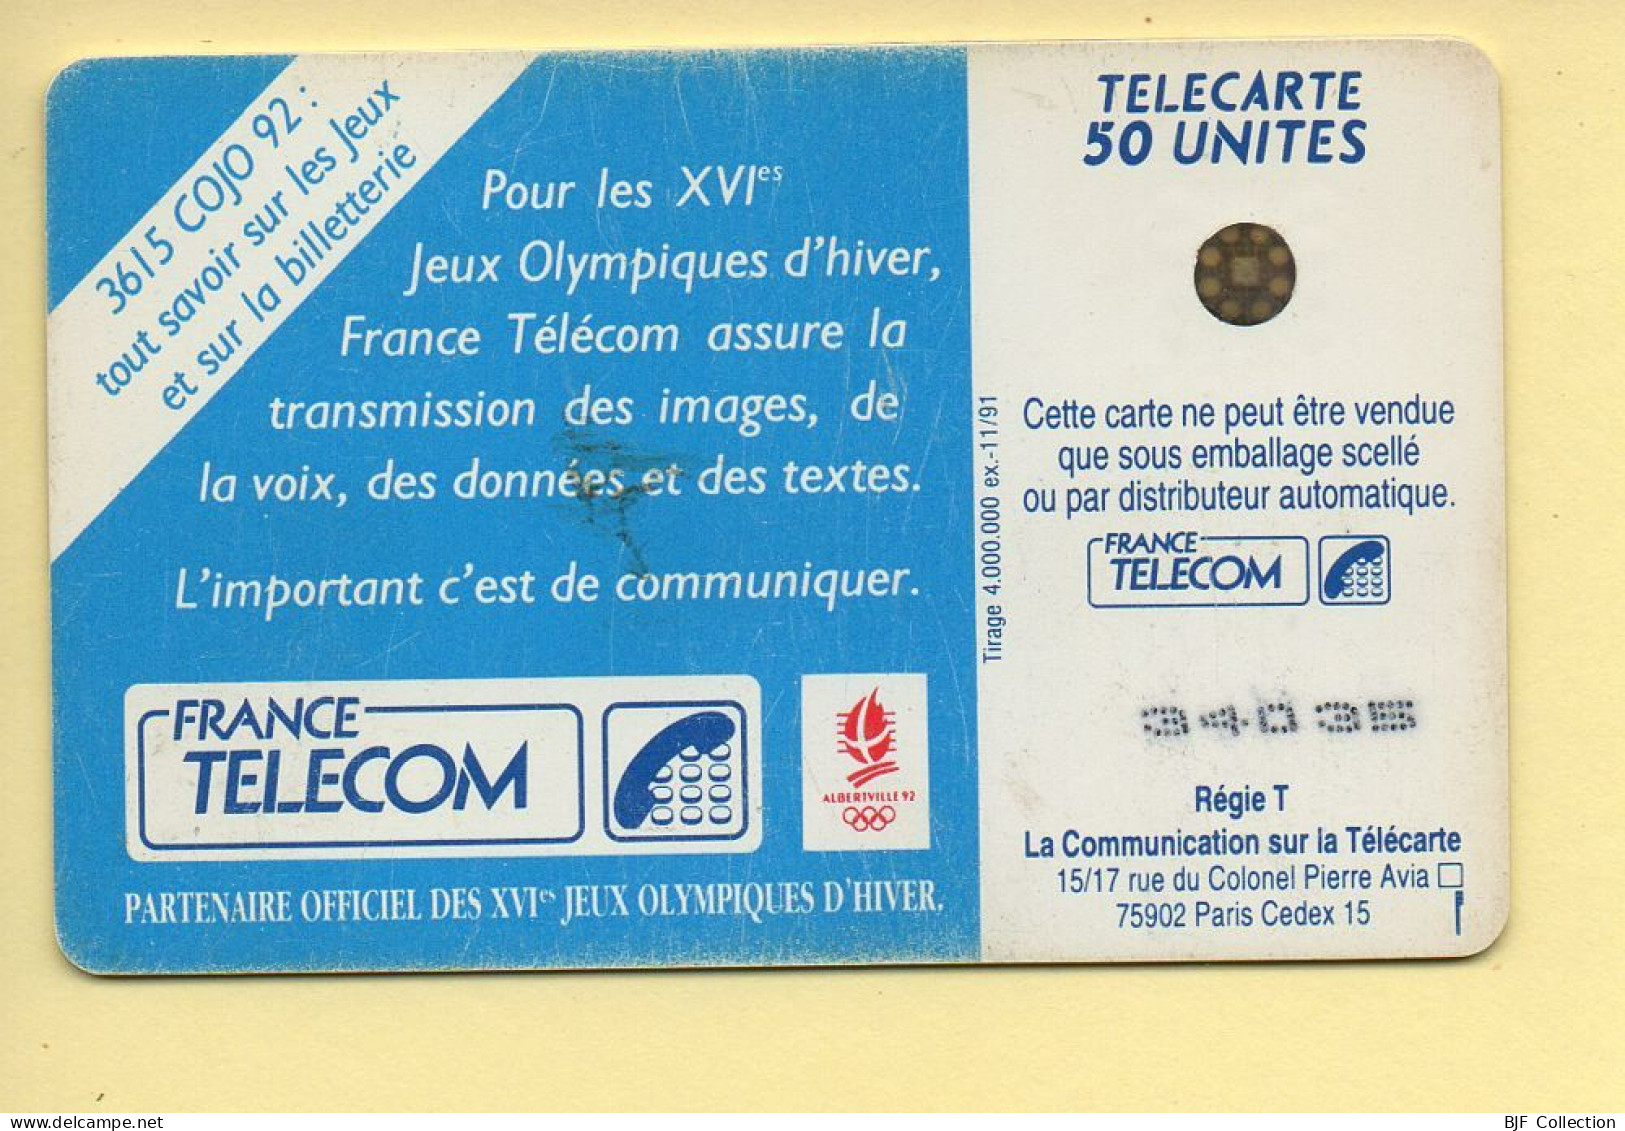 Télécarte 1991 : SKI DE FOND / 50 Unités / Numéro 34035 / 11-91 / Jeux Olympiques D'Hiver ALBERTVILLE 92 - 1991